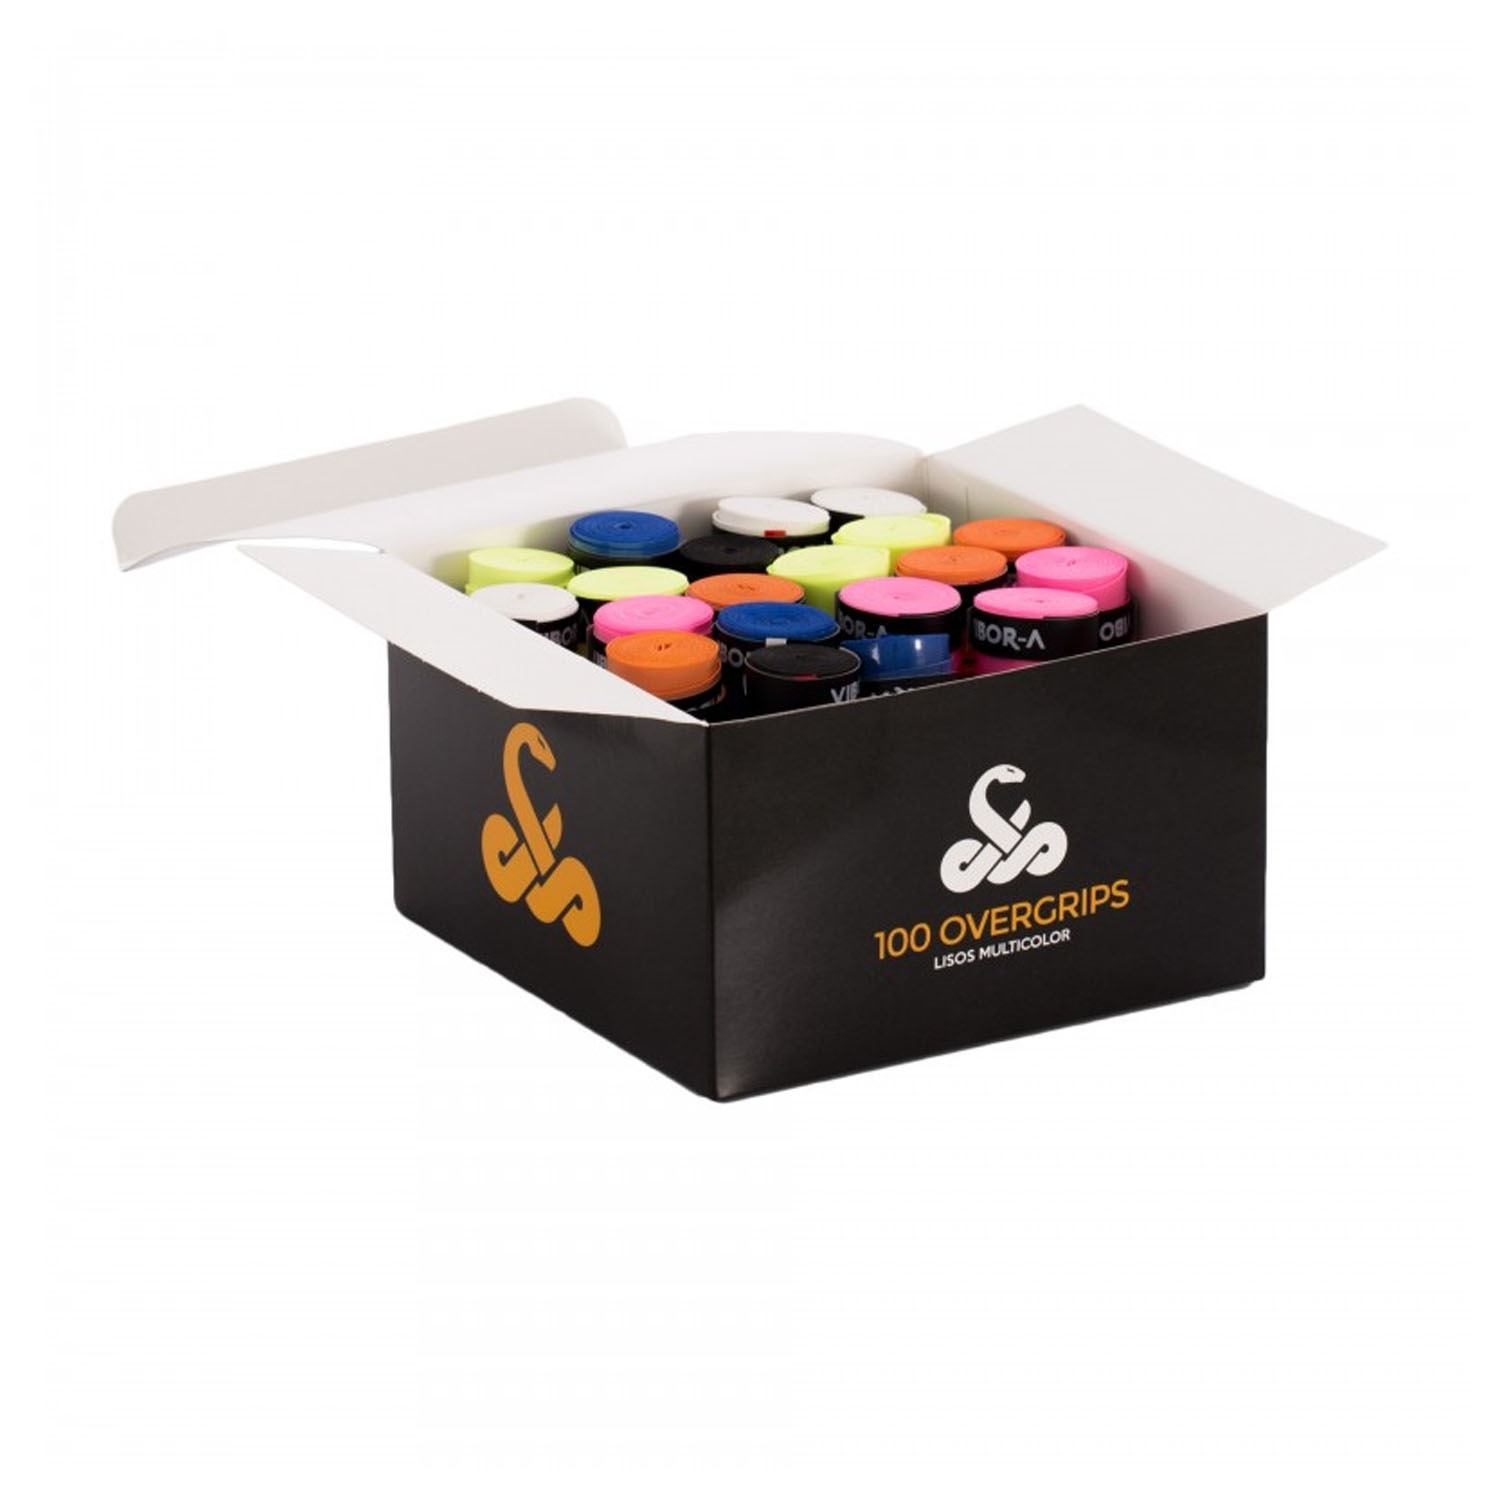 Vibor-A Box Pro x 100 Box Sobregrips - Multicolor